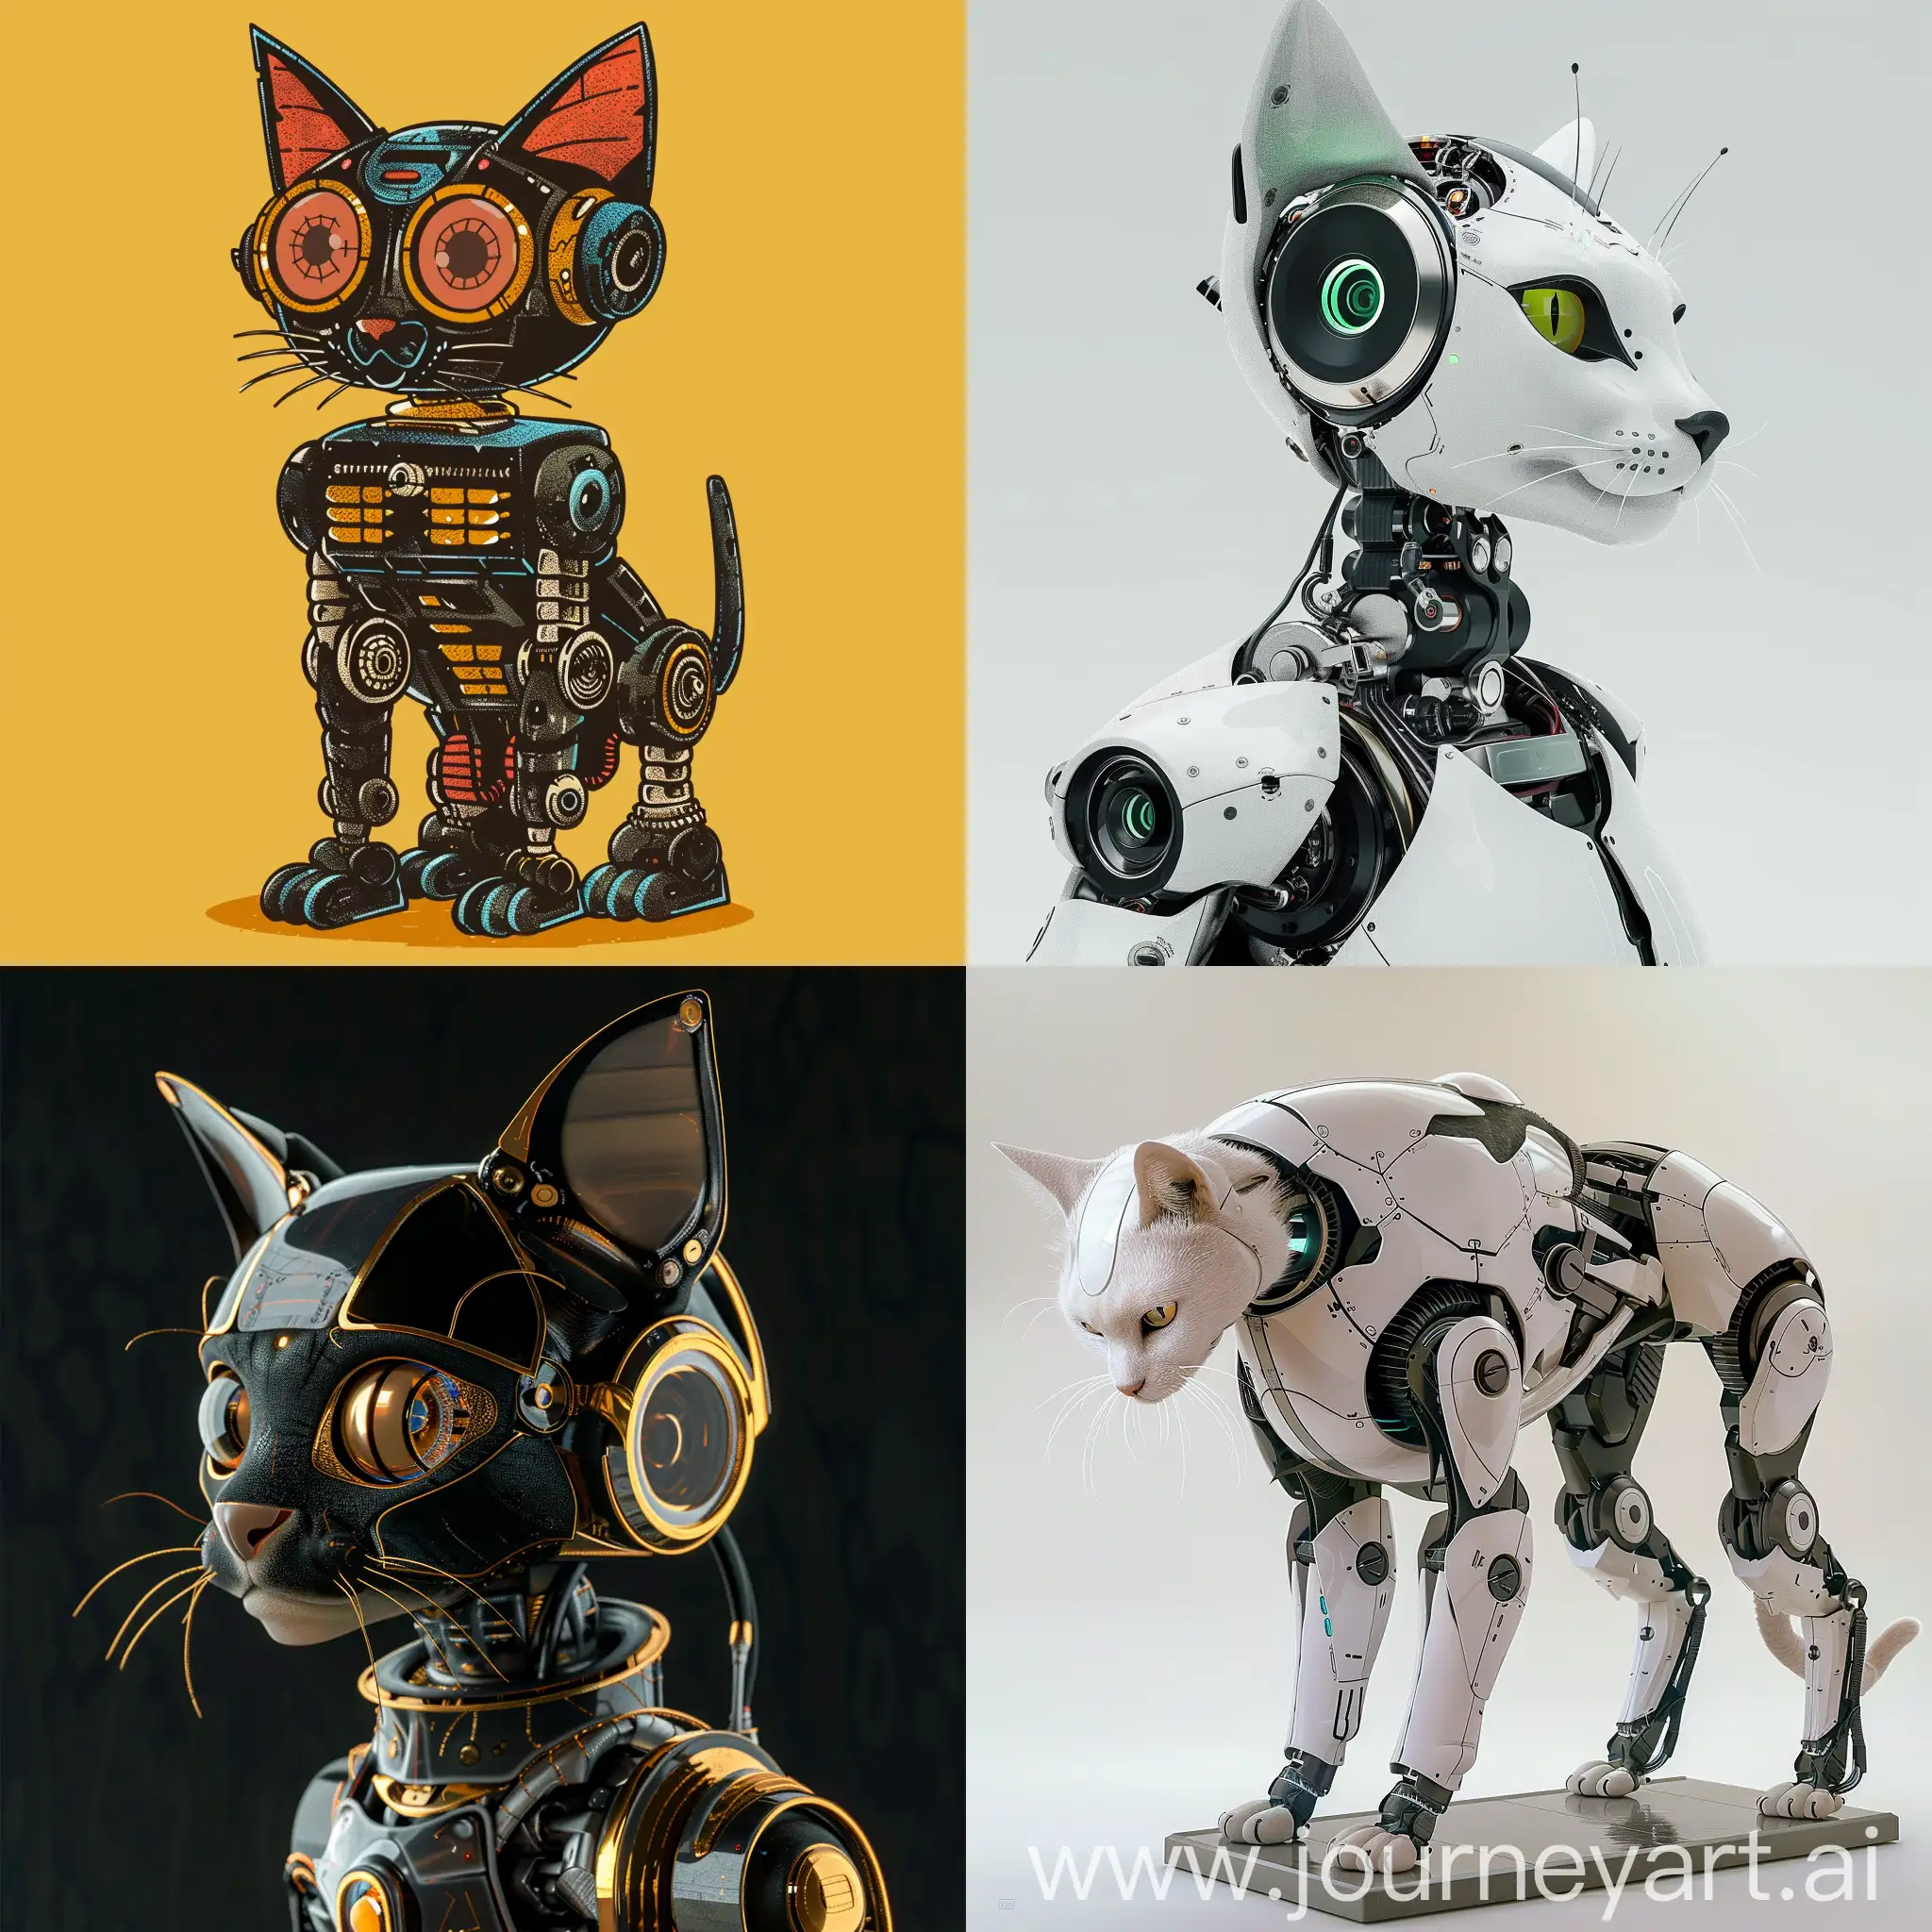 Robot-Cat-Version-6-in-a-Futuristic-Setting